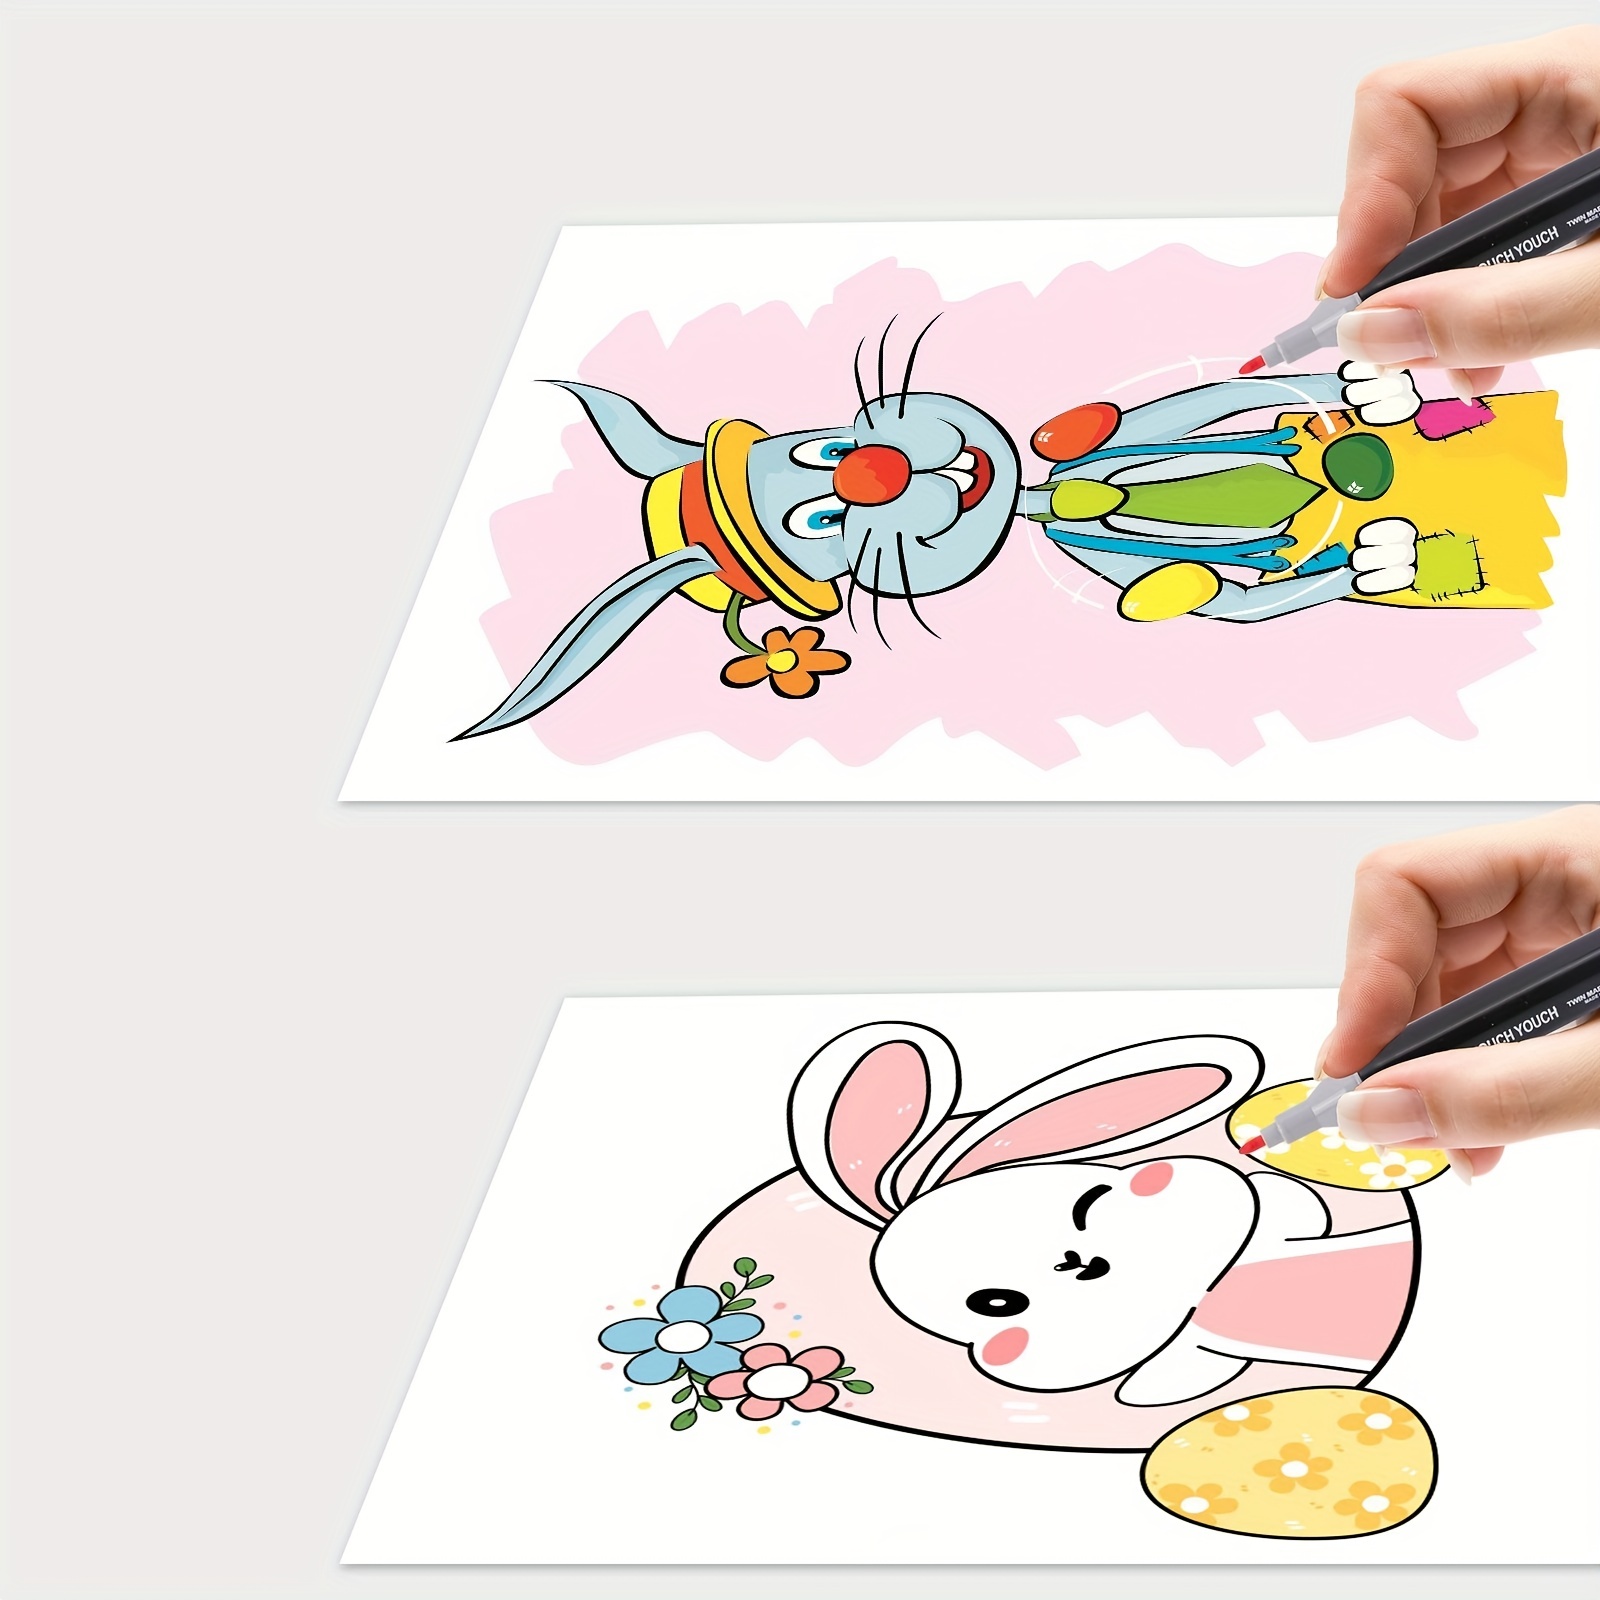 Dual tip Sketch markers for illustration with blender marker - Art